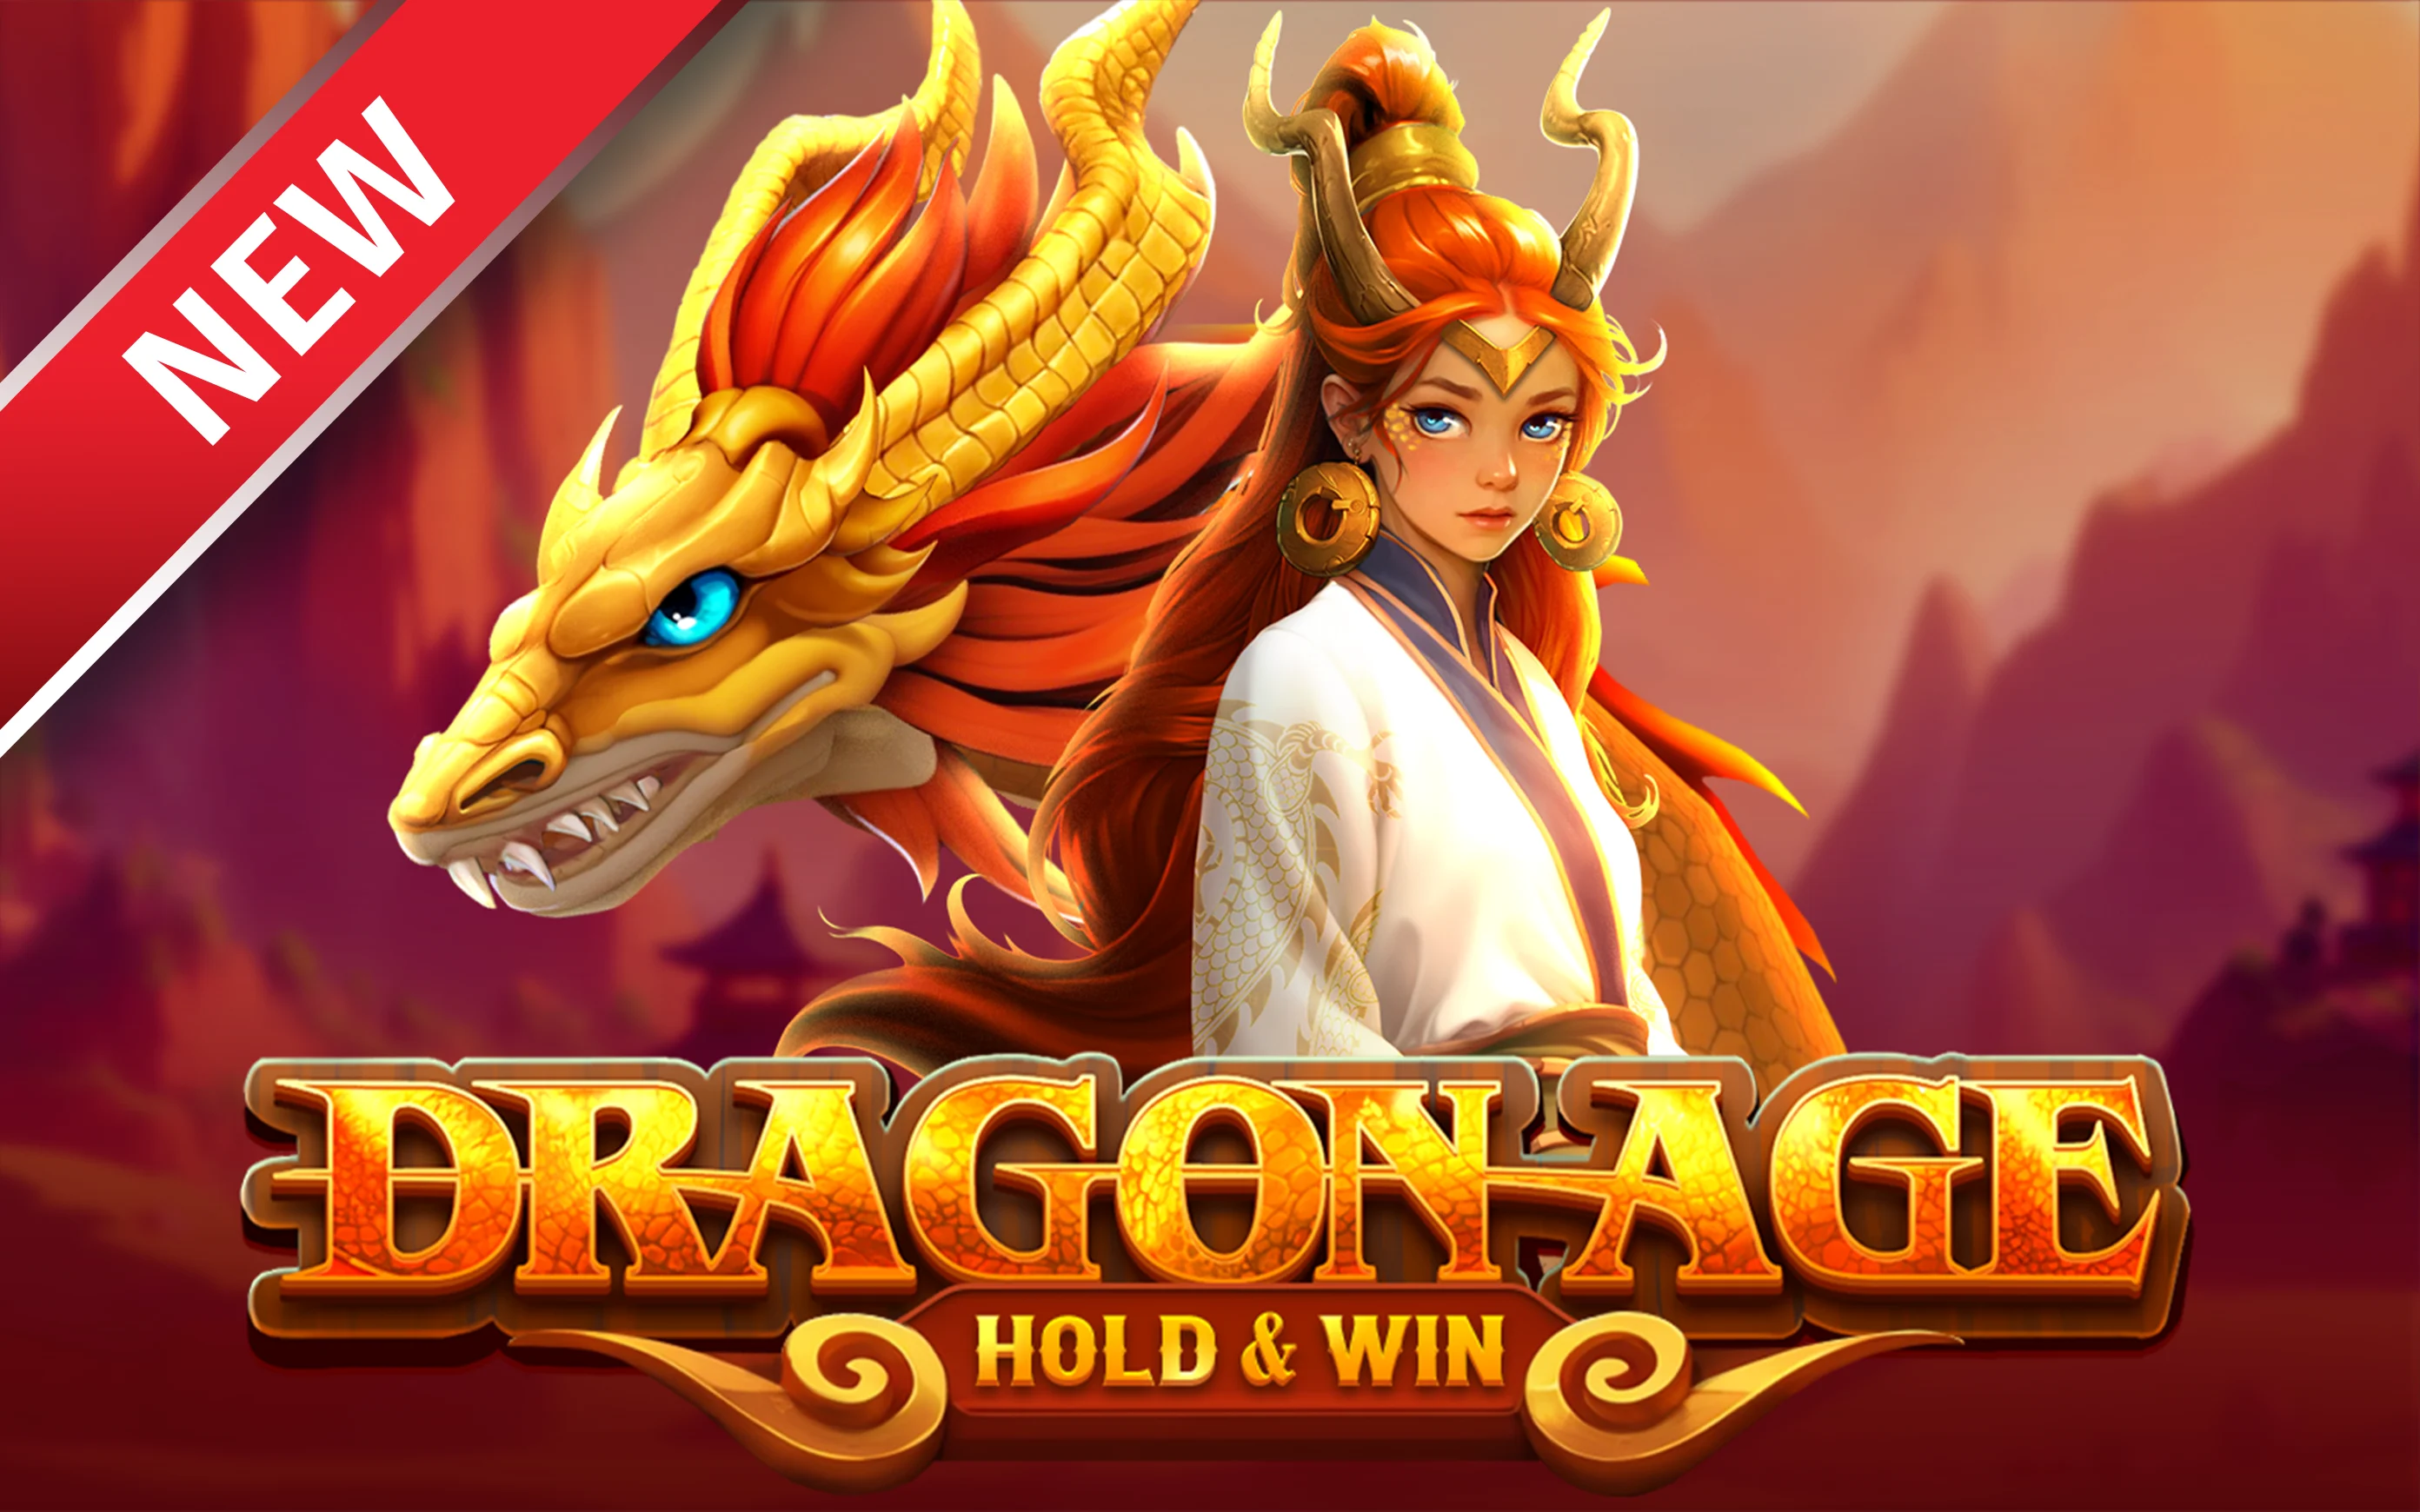 Gioca a Dragon Age Hold & Win sul casino online Starcasino.be